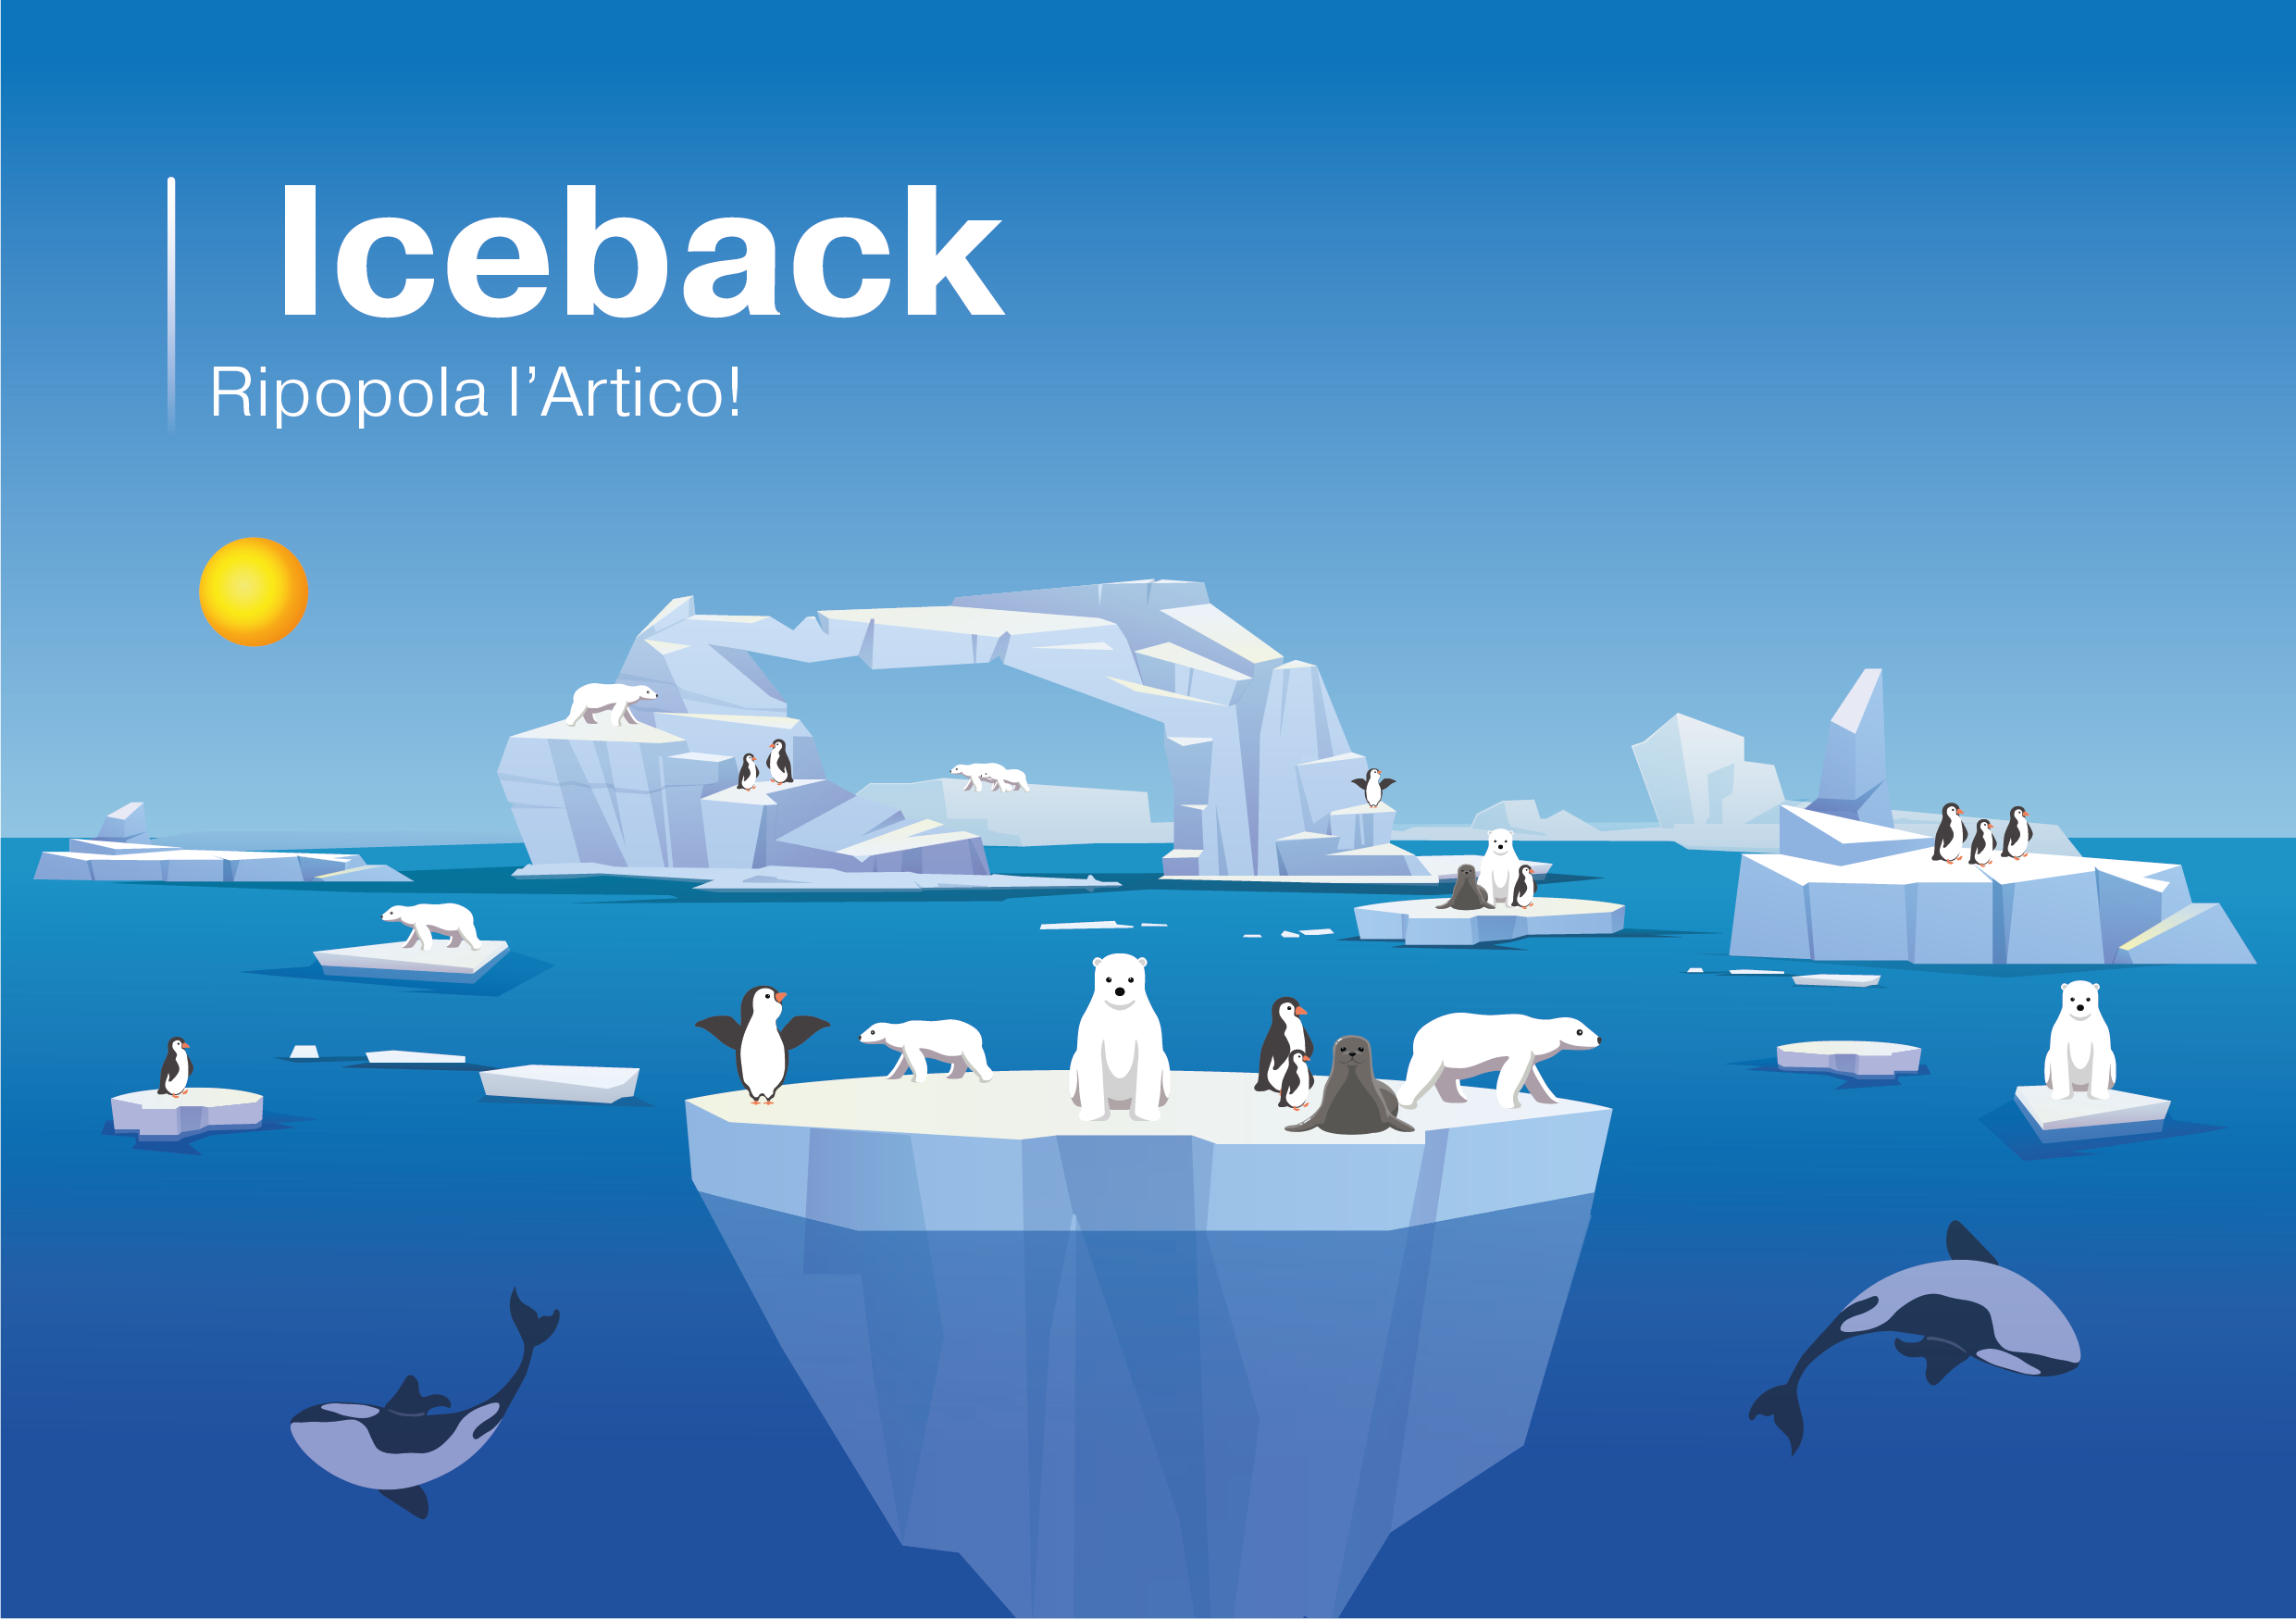 Iceback